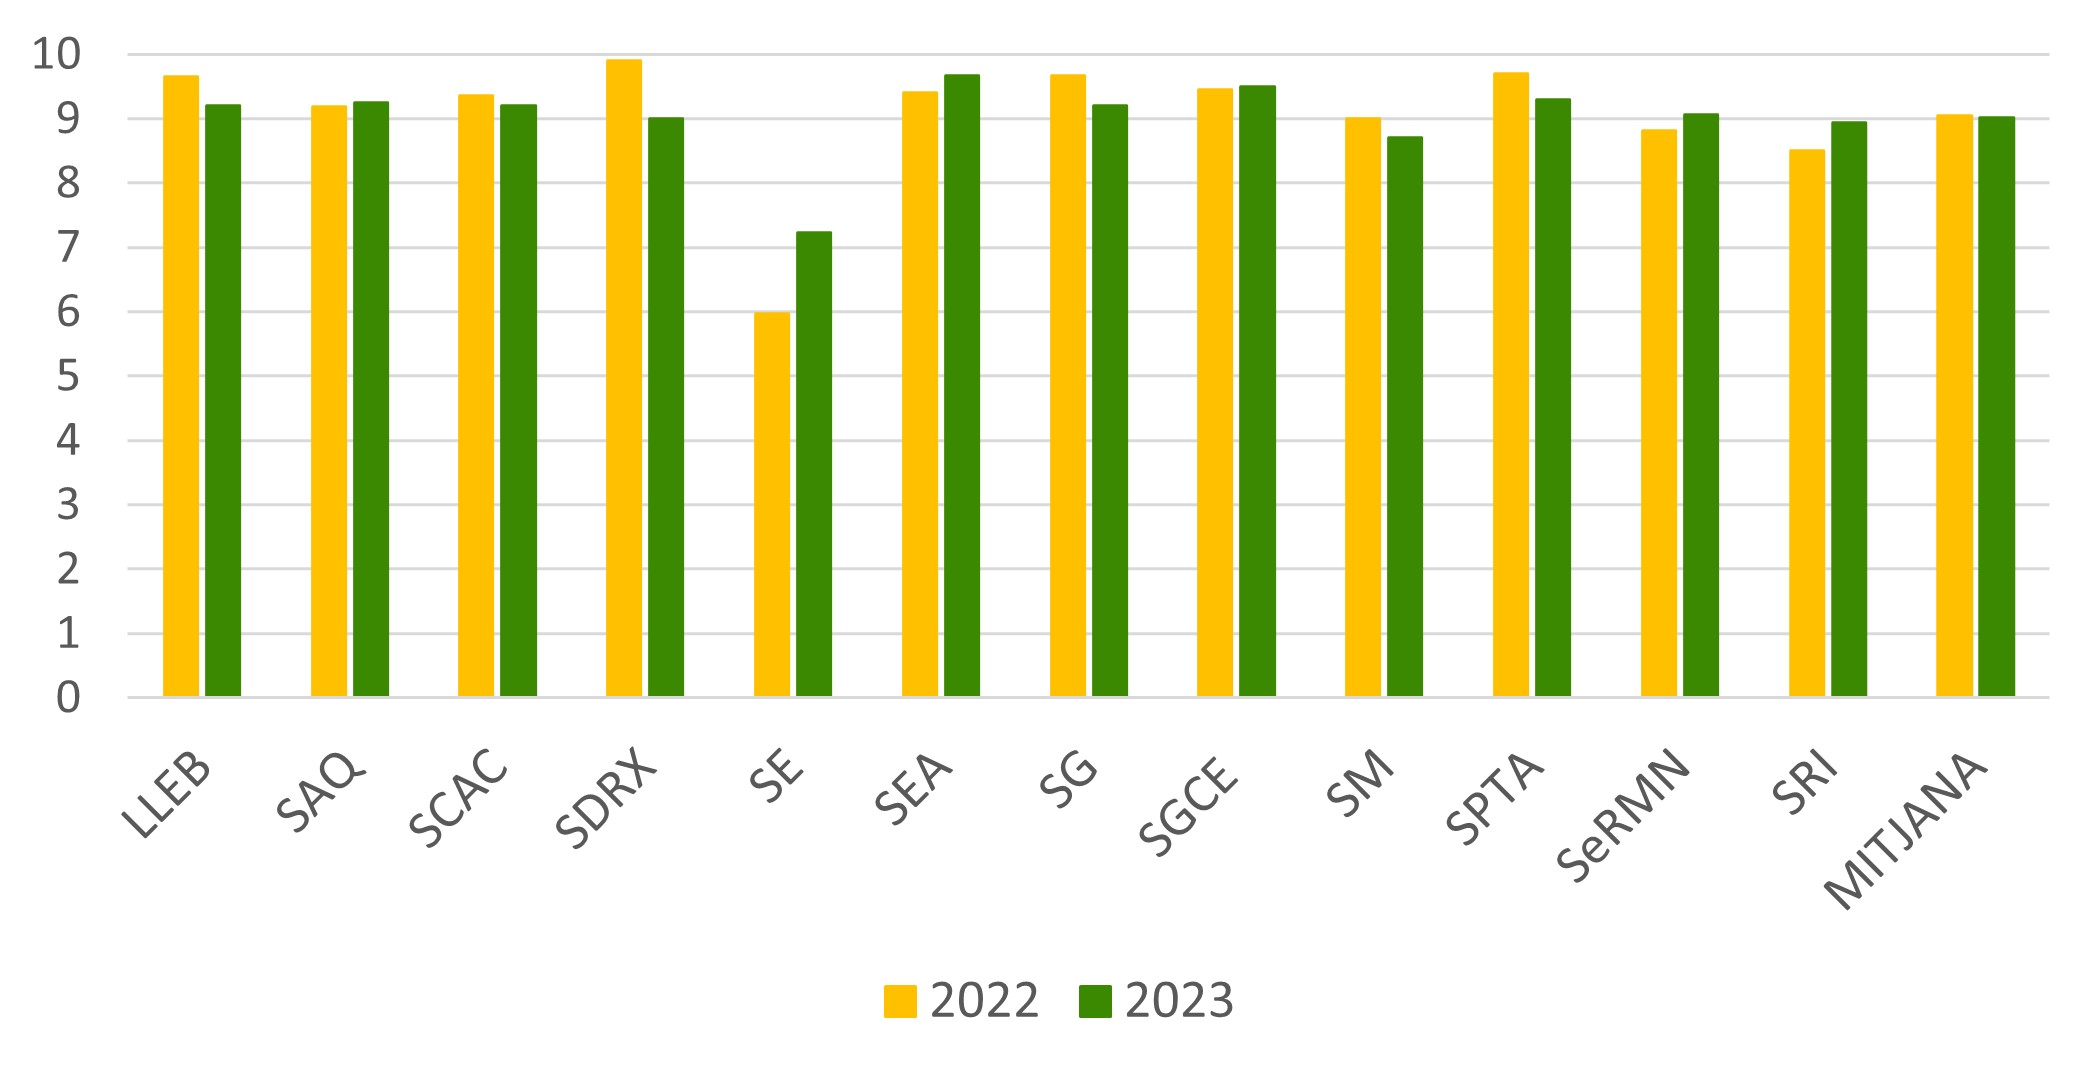 Gráfico comparativo del grado de satisfacción del 2023 respecto al 2022